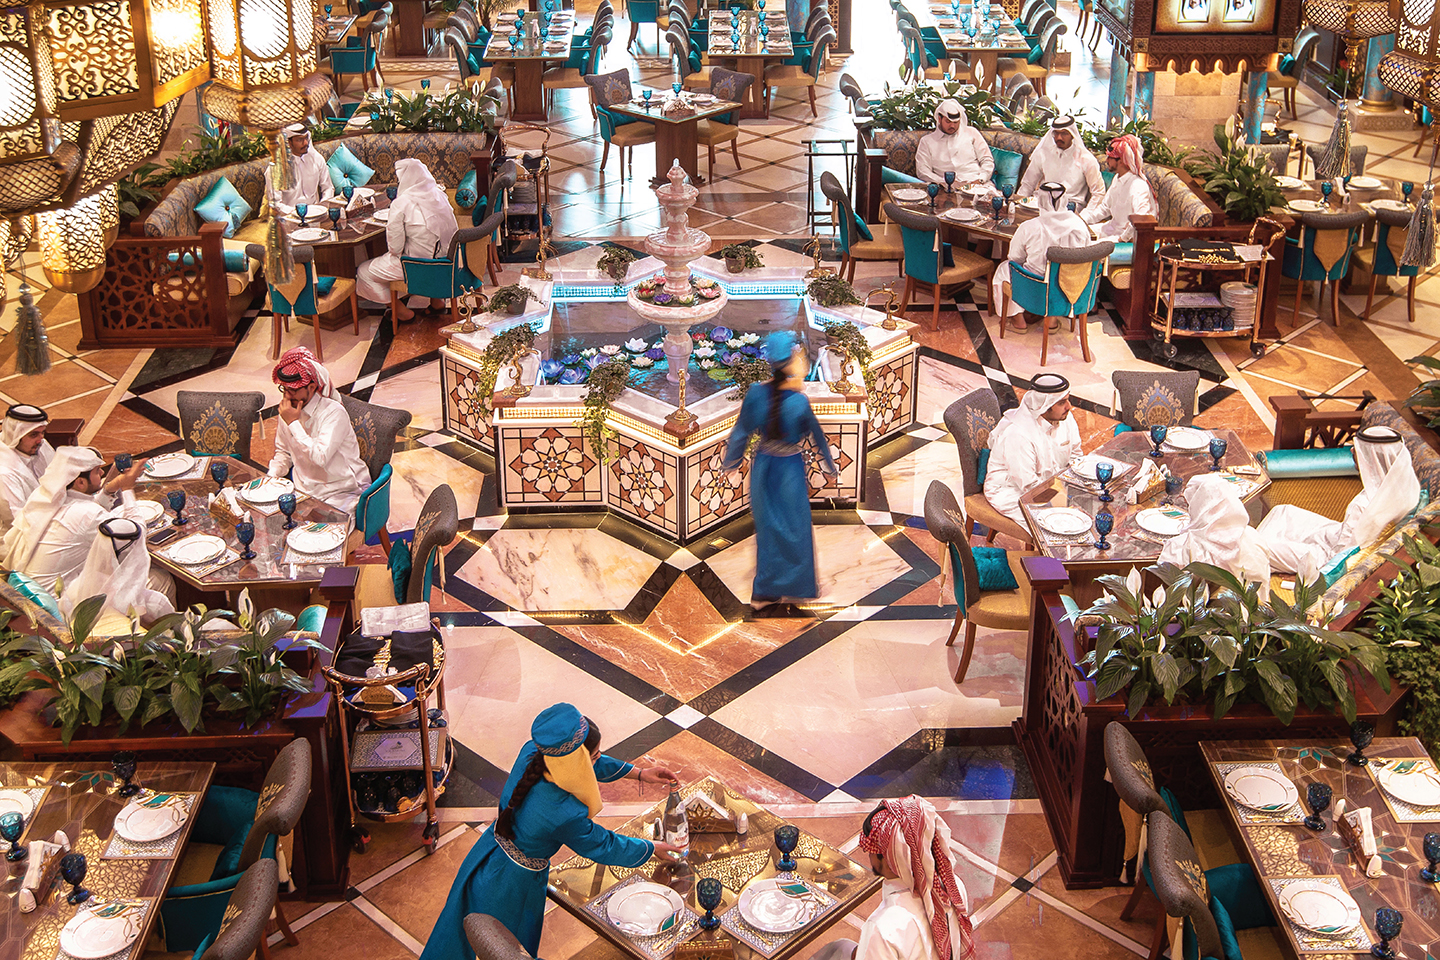 , THE EXPERIENCE, YASMINE PALACE - مطعم قصر الياسمين